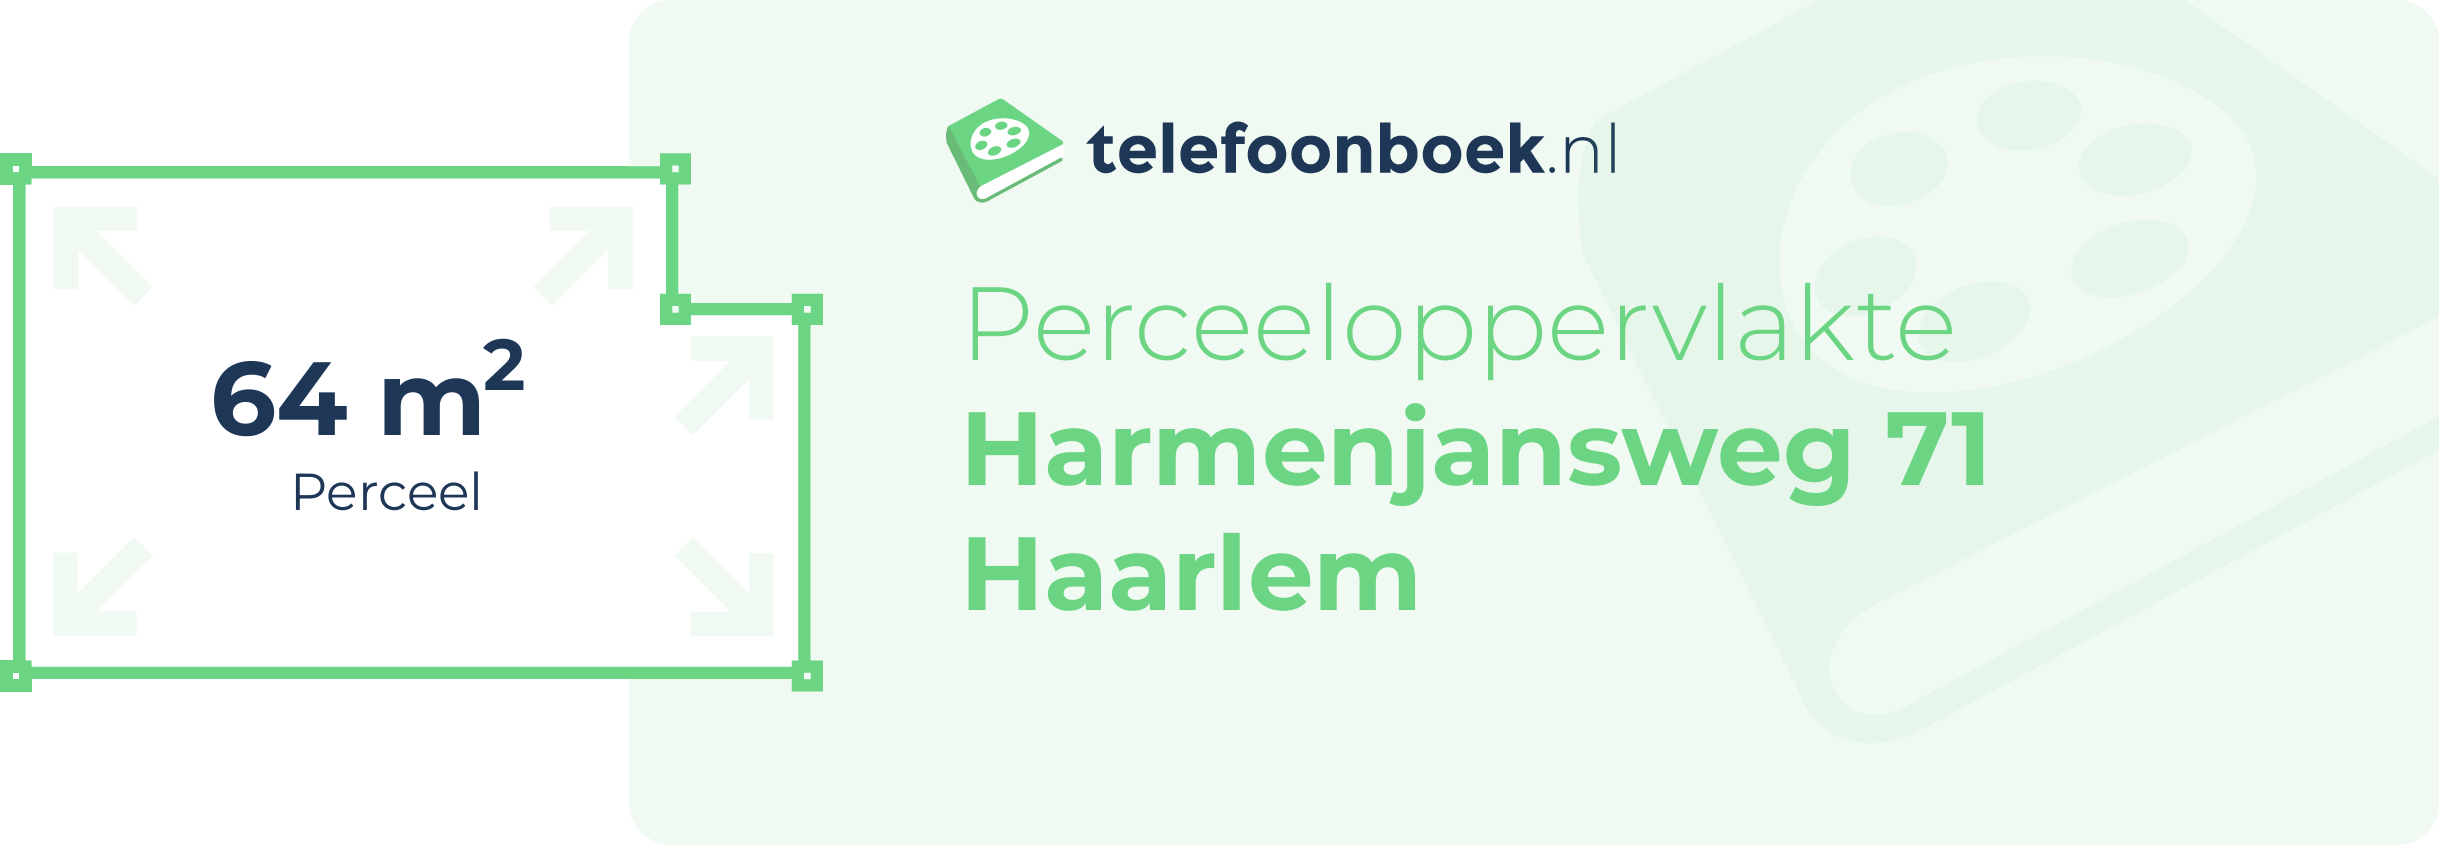 Perceeloppervlakte Harmenjansweg 71 Haarlem